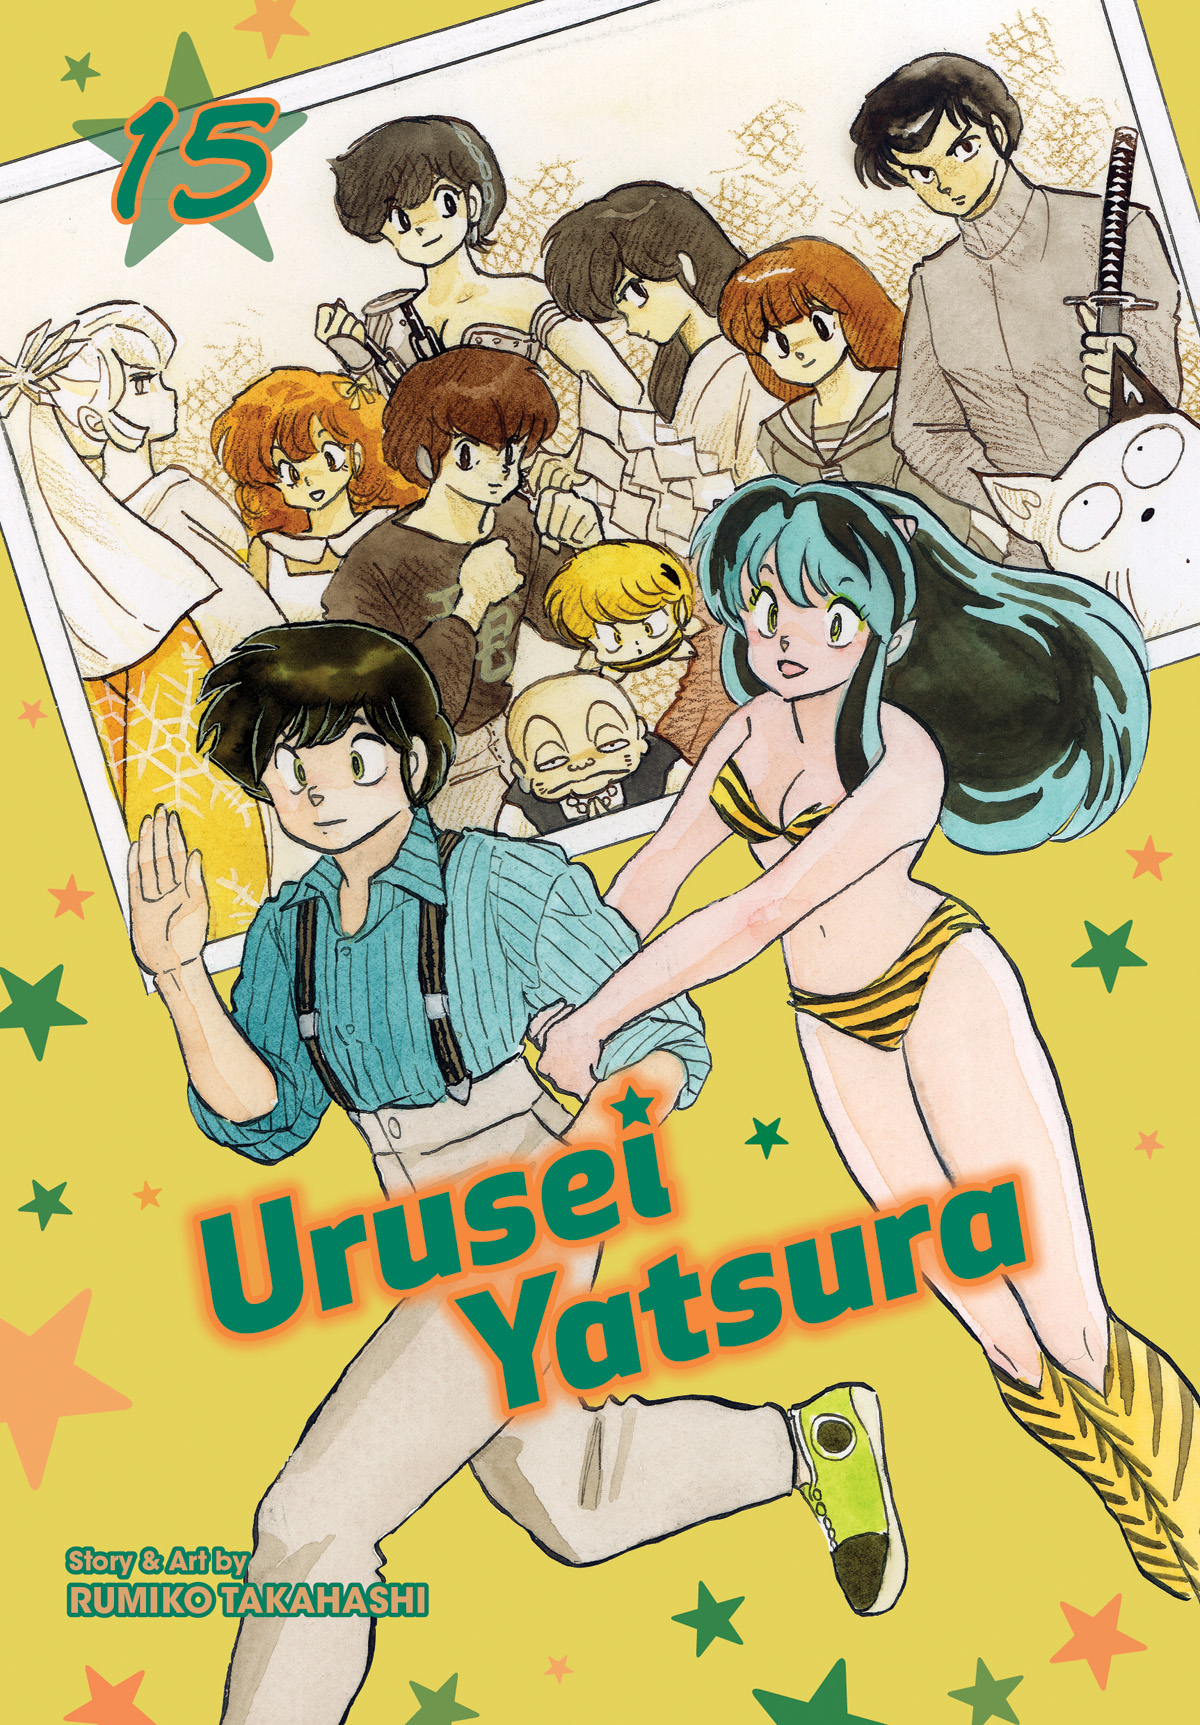 Urusei Yatsura Manga Volume 15 (Mature)